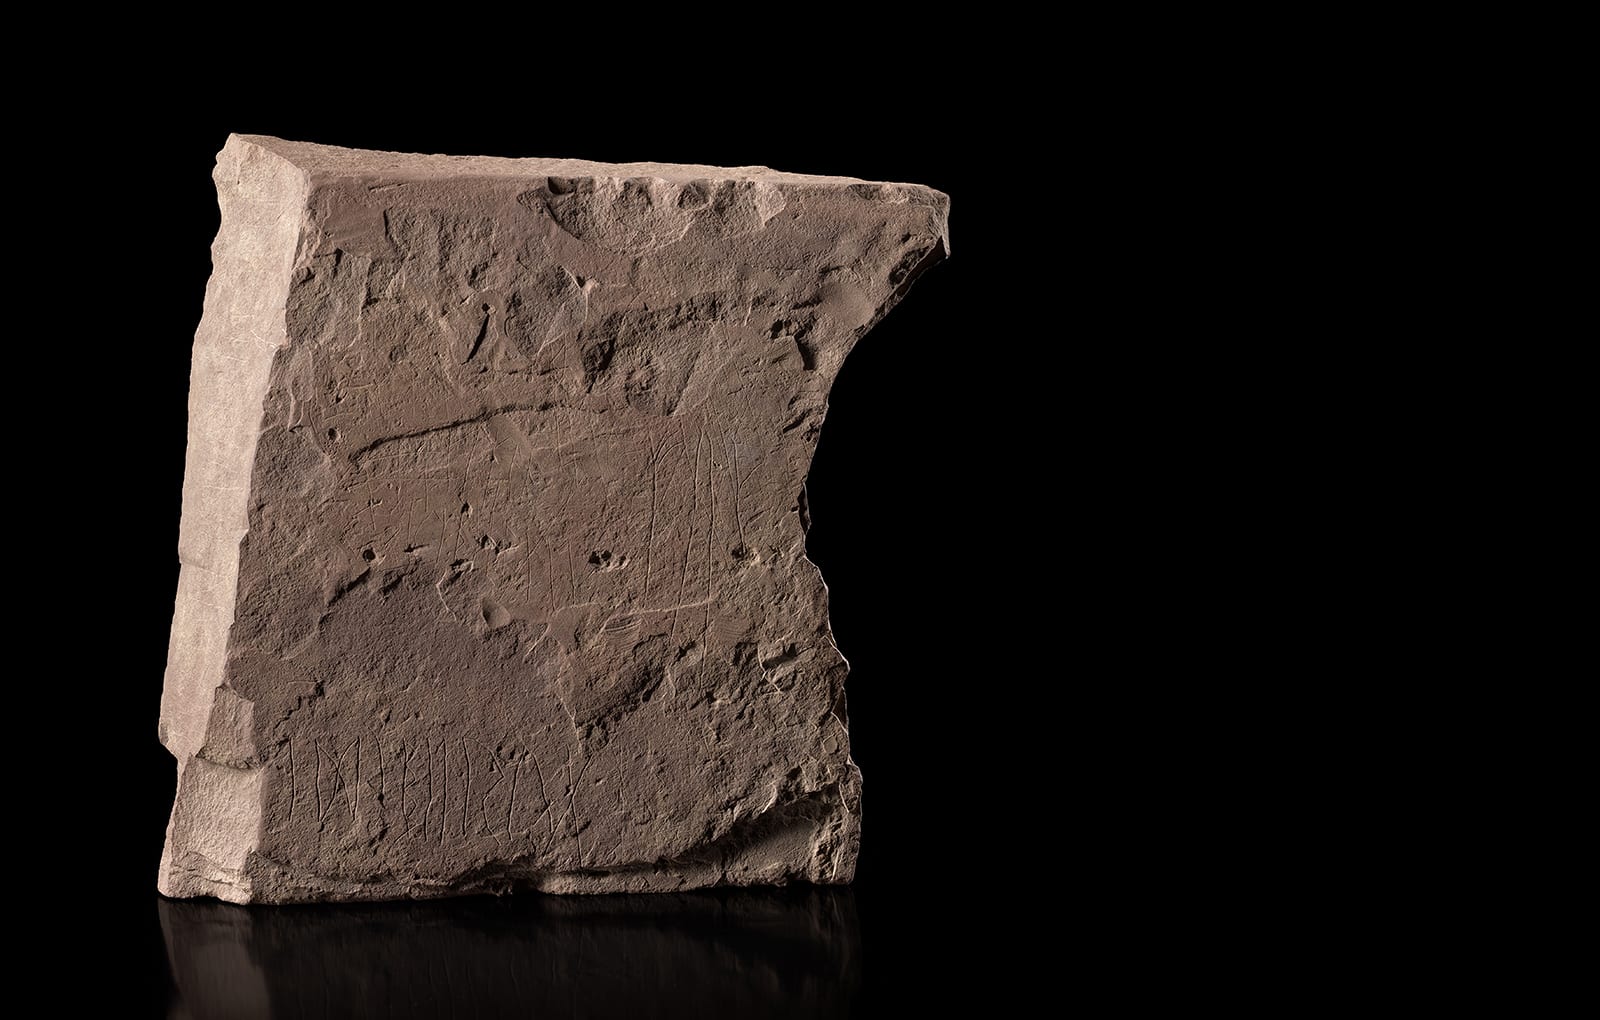 به نقش غامض.. اكتشاف أقدم حجر روني مؤرخ في العالم بالنرويج 